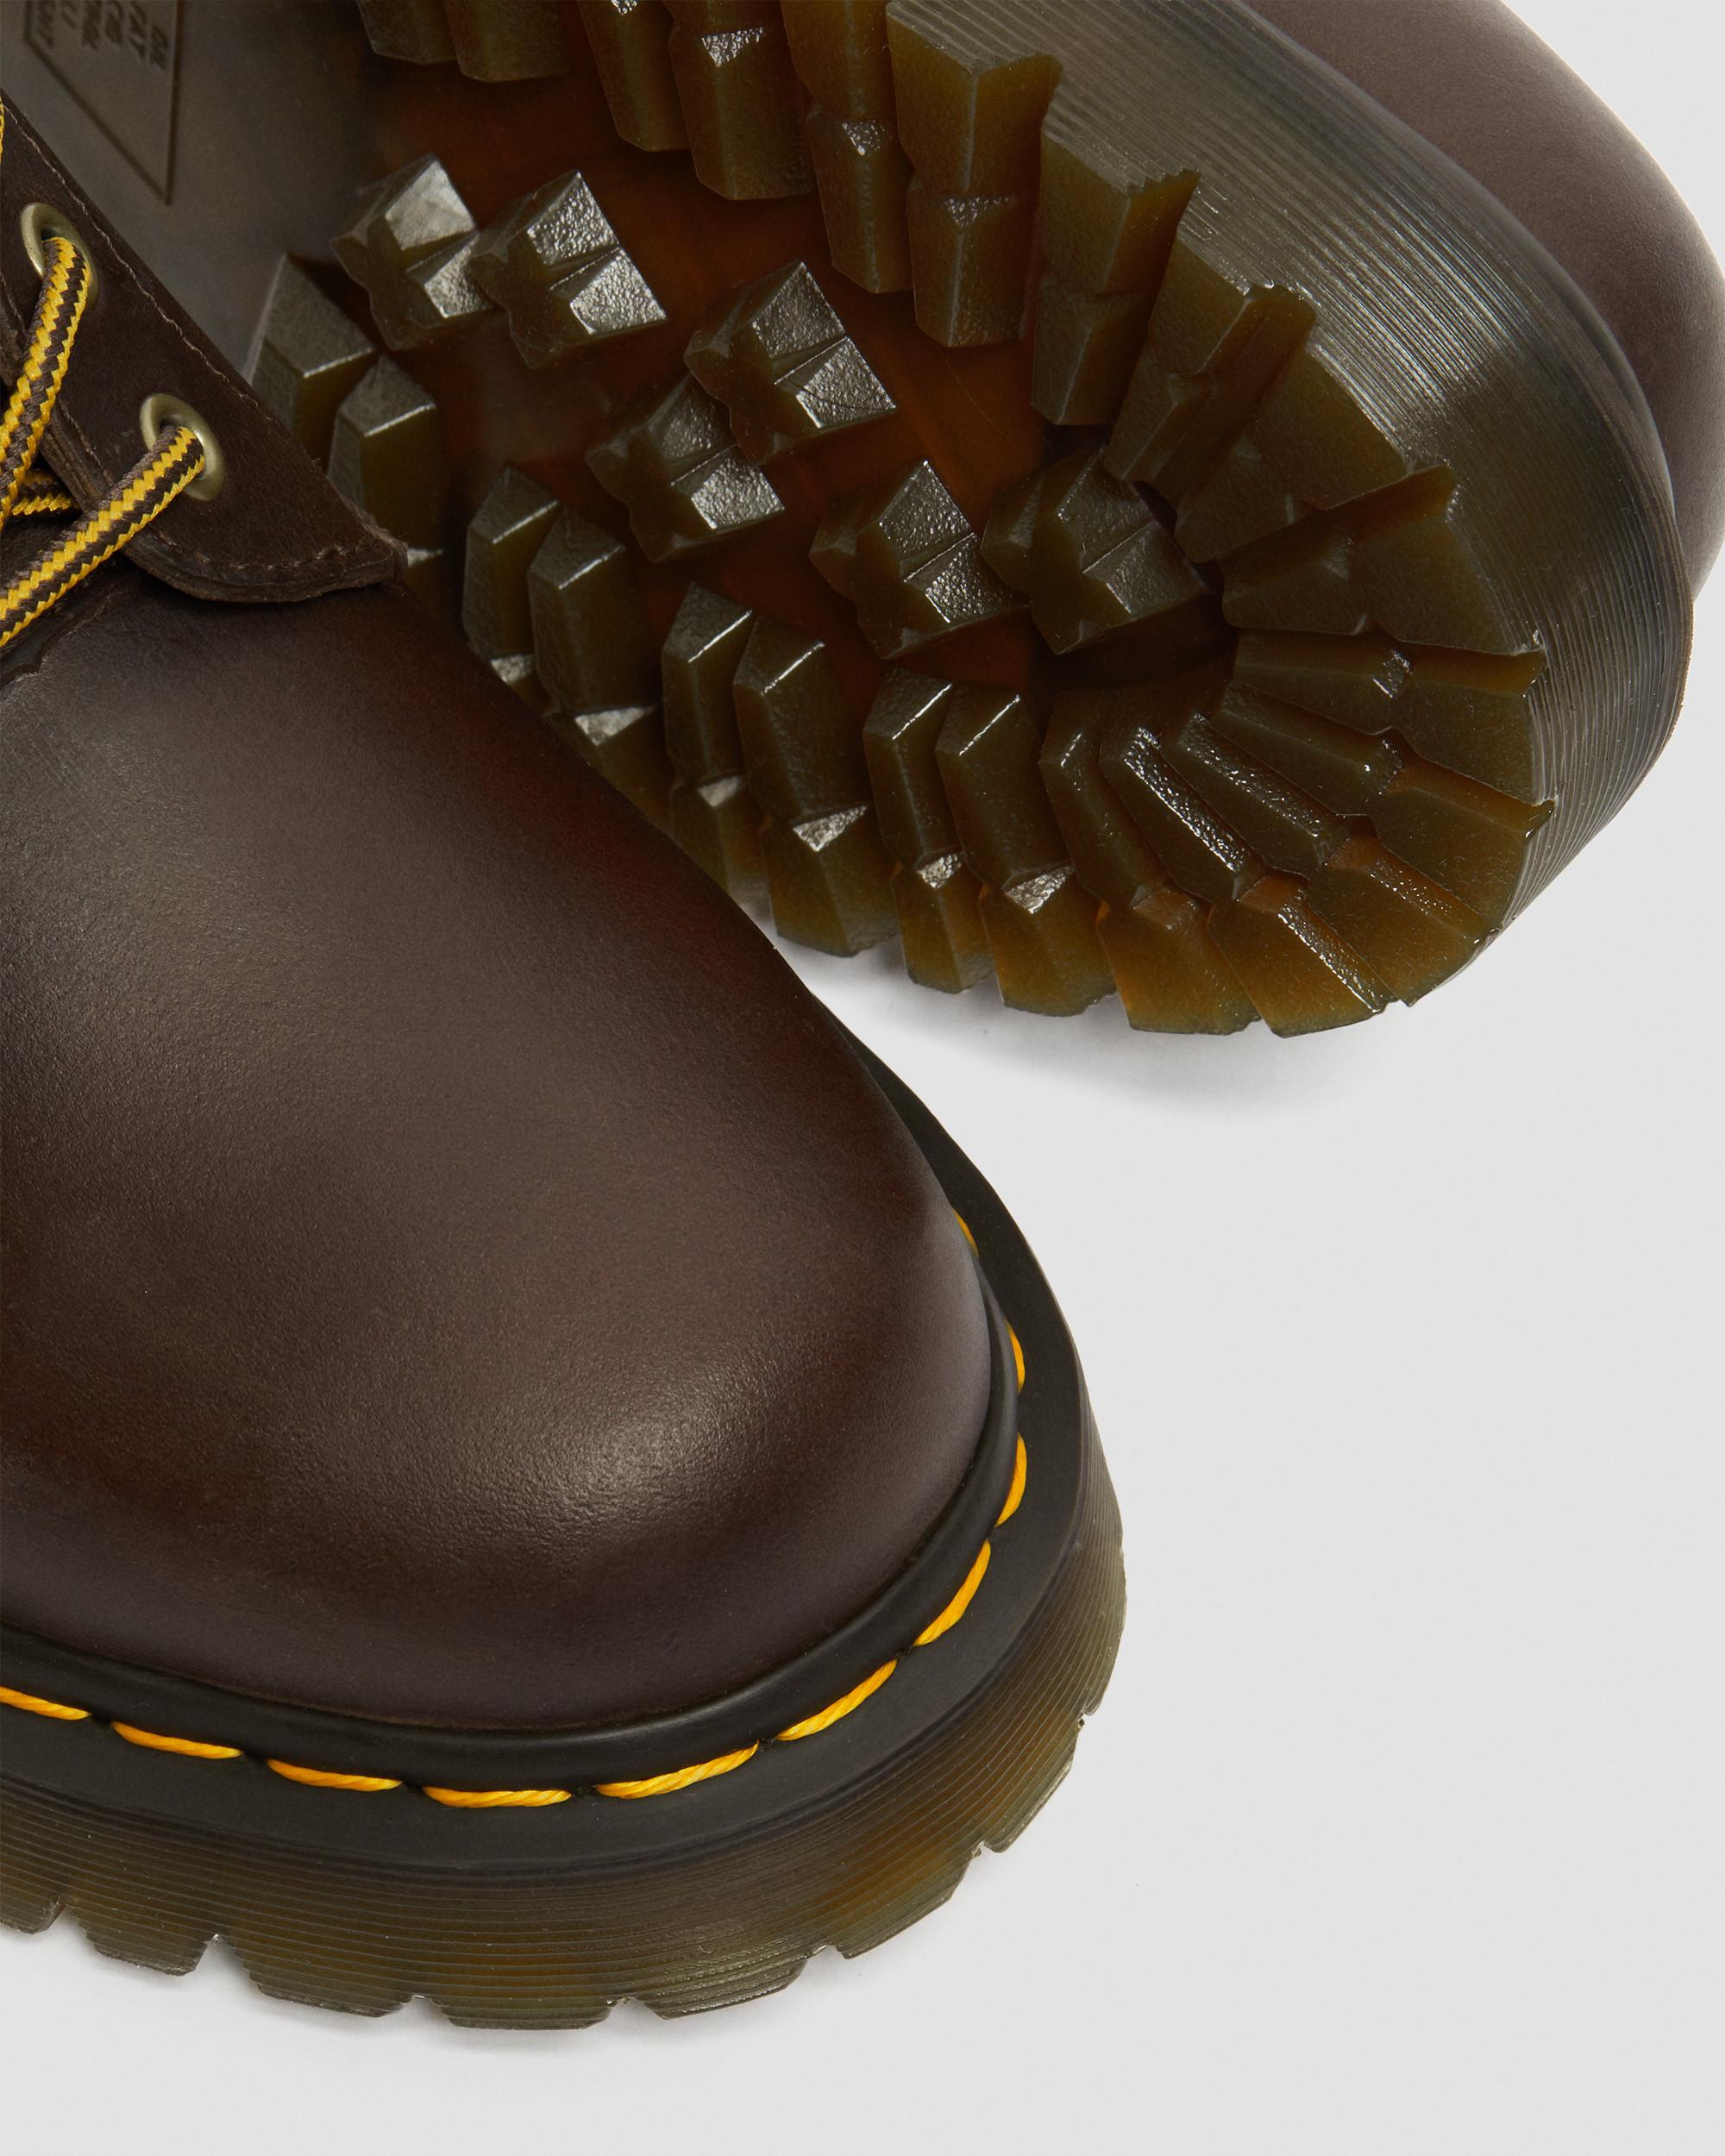 Dr Martens 1460 Bex 8-Eye Boots in Dark Brown